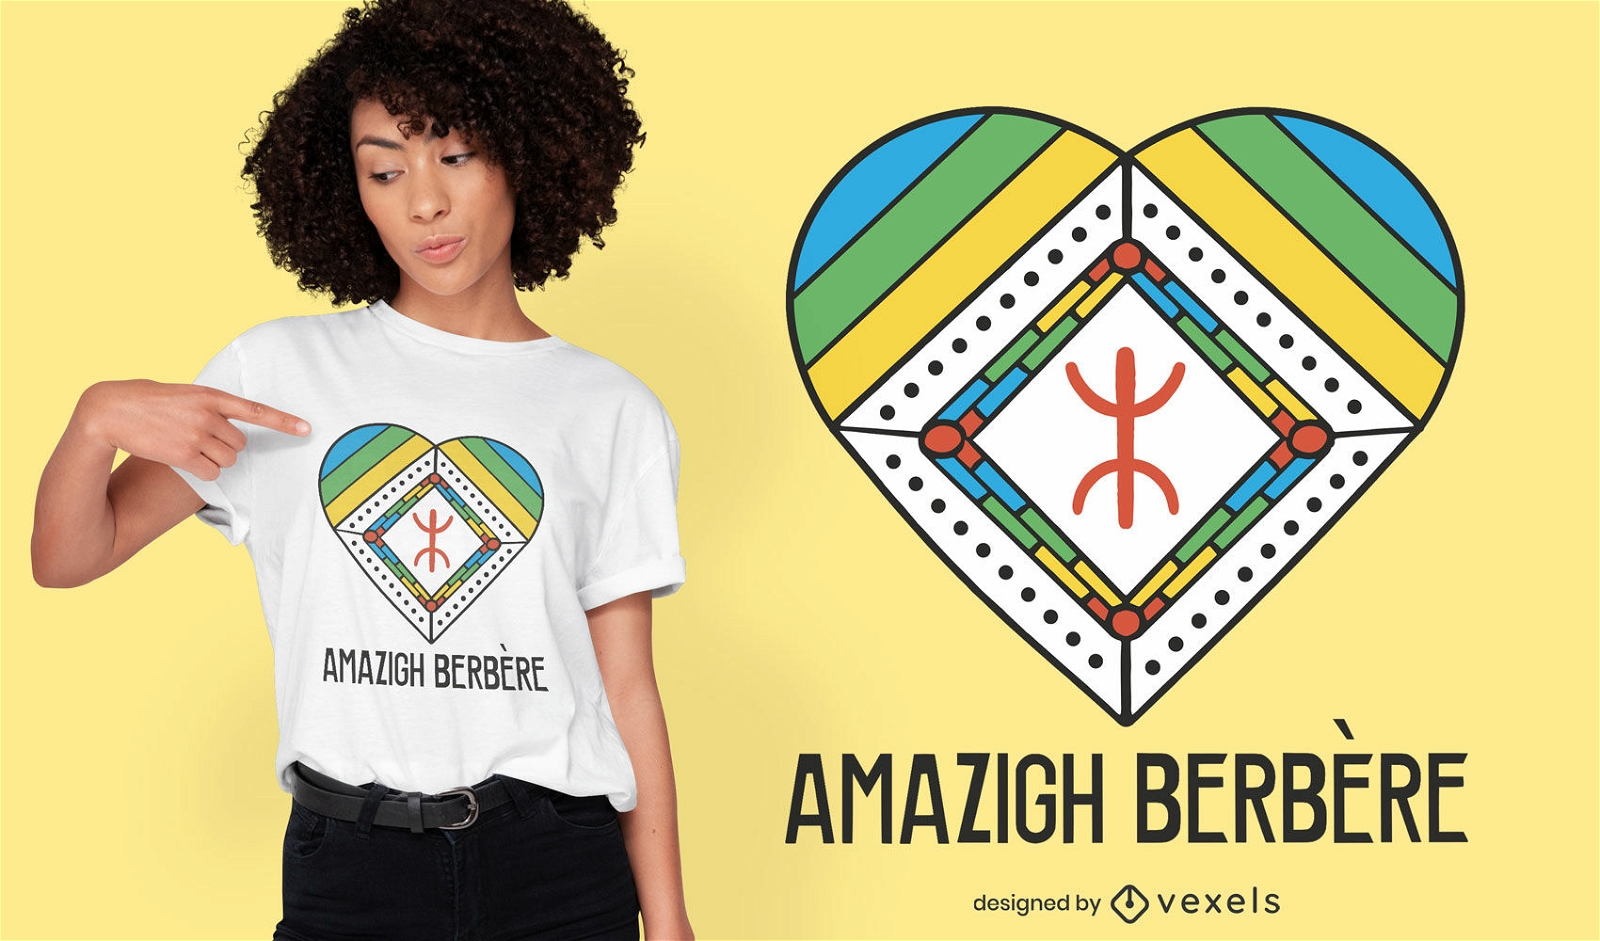 S?mbolo africano dentro do design de camiseta de cora??o